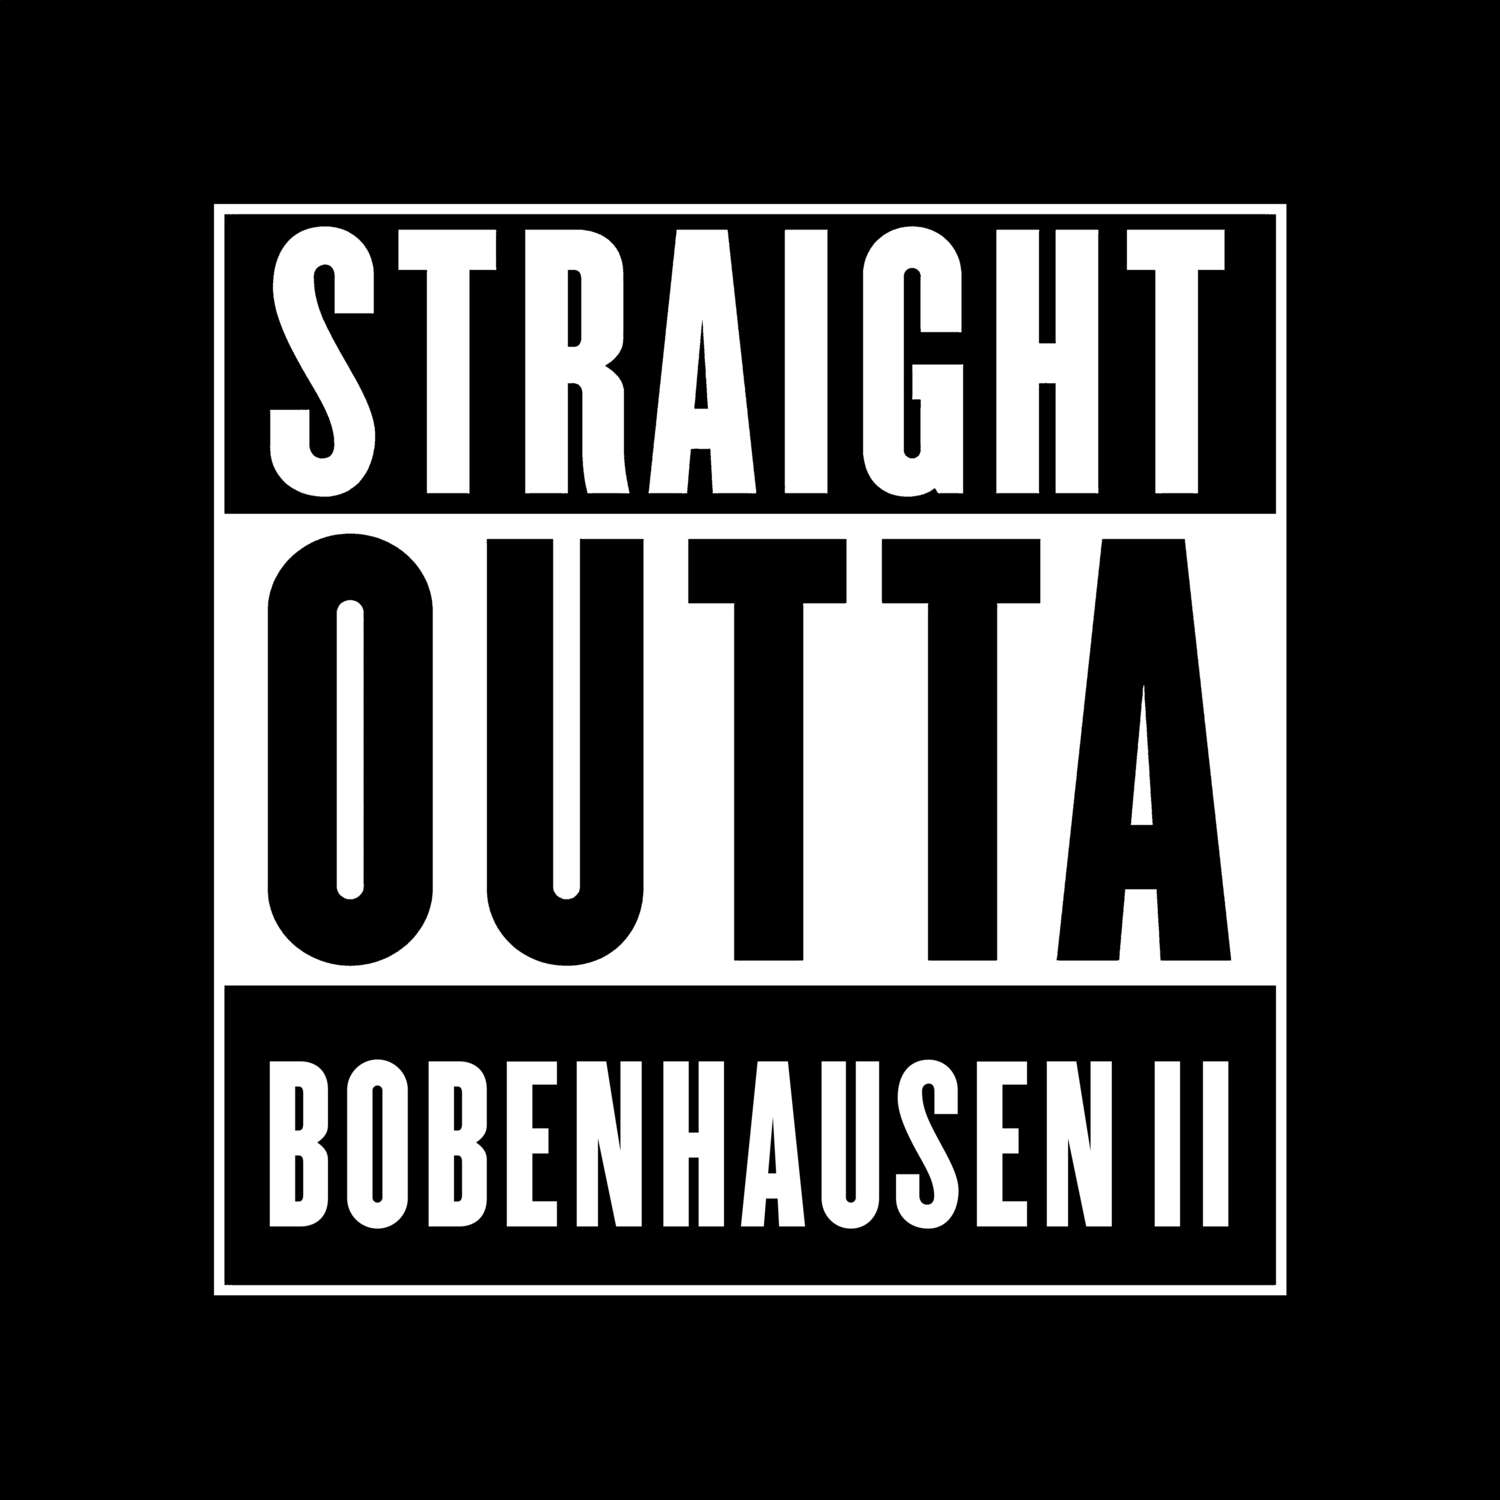 Bobenhausen II T-Shirt »Straight Outta«